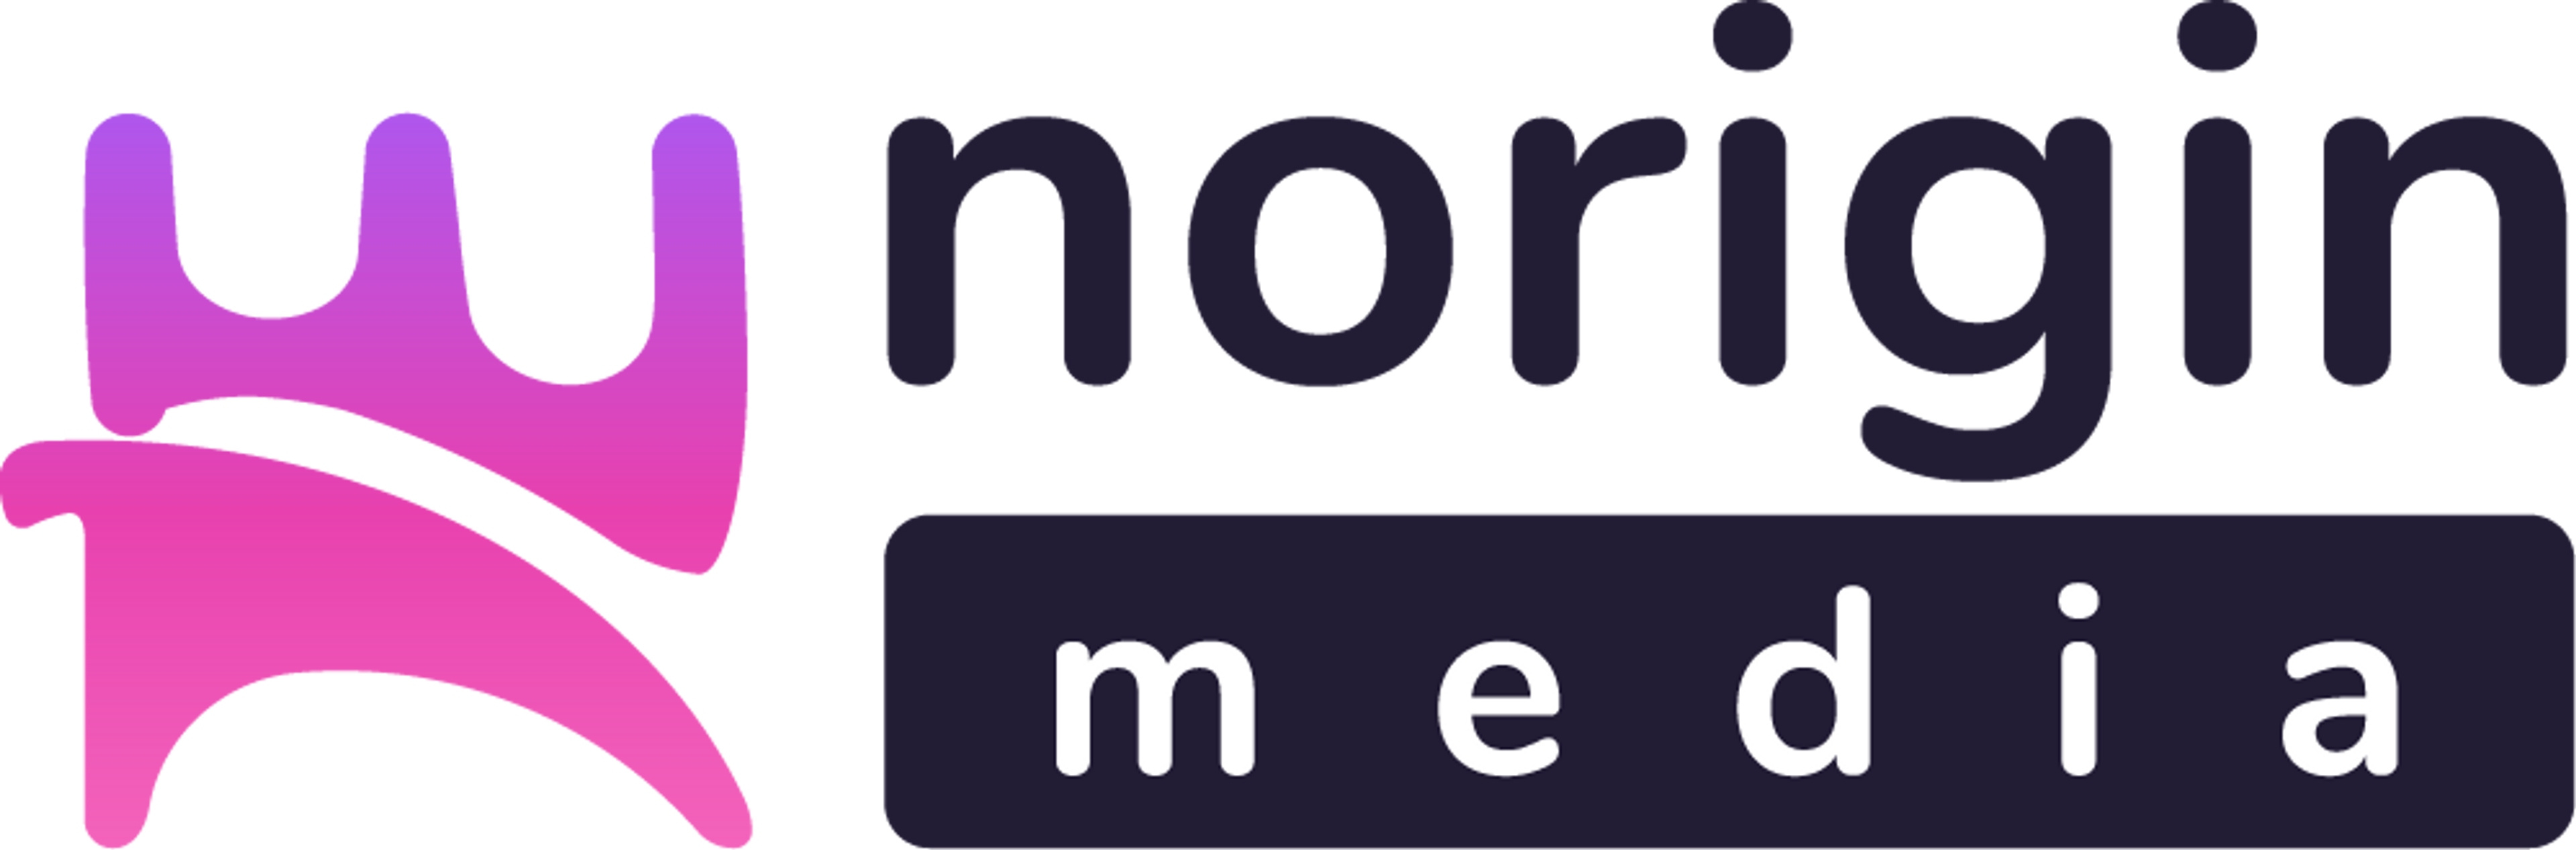 Norigin Media logo